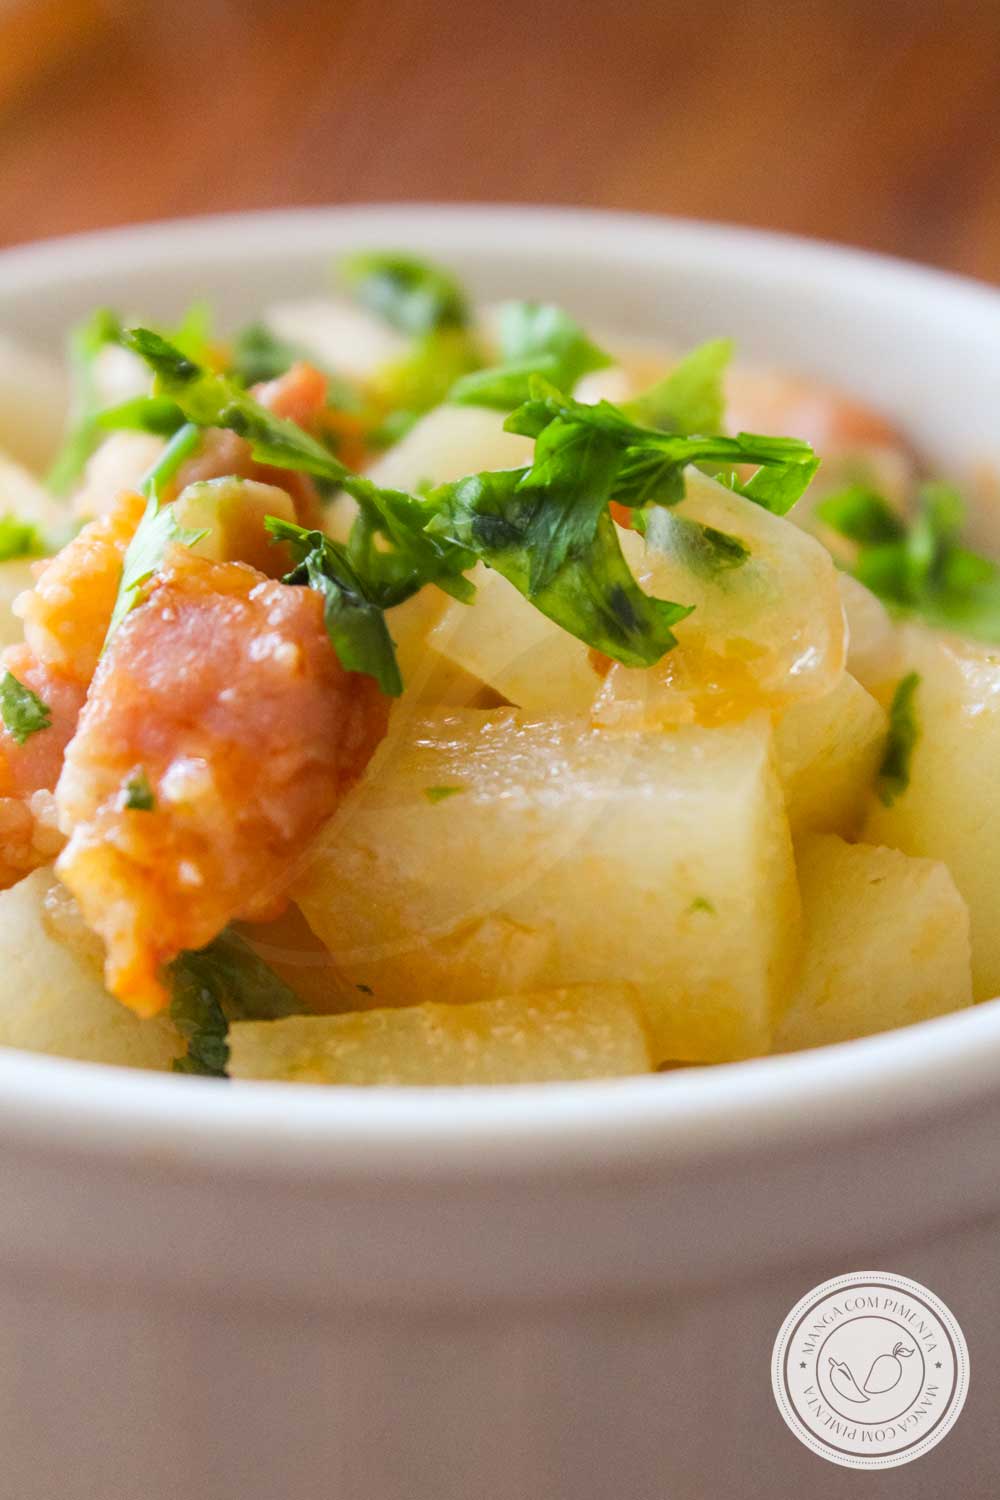 Receita de Chuchu com Bacon e Molho de Tomate - prepare esse prato básico para o almoço ou jantar da semana da família.